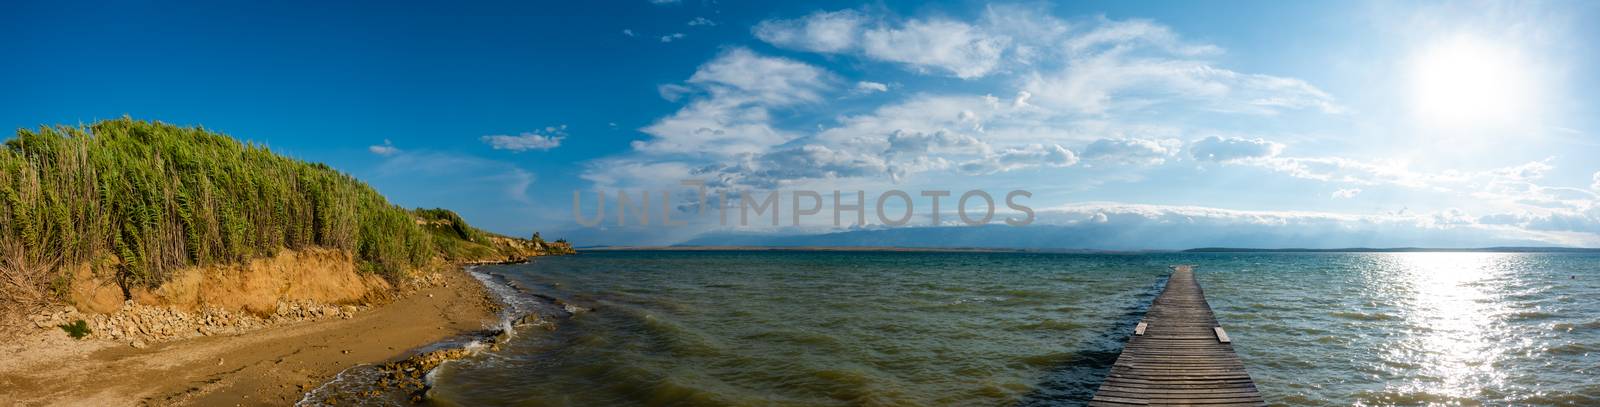 Famous Sabunike Beach on Privlaka peninsula near Nin, Zadar county, Croatia by asafaric